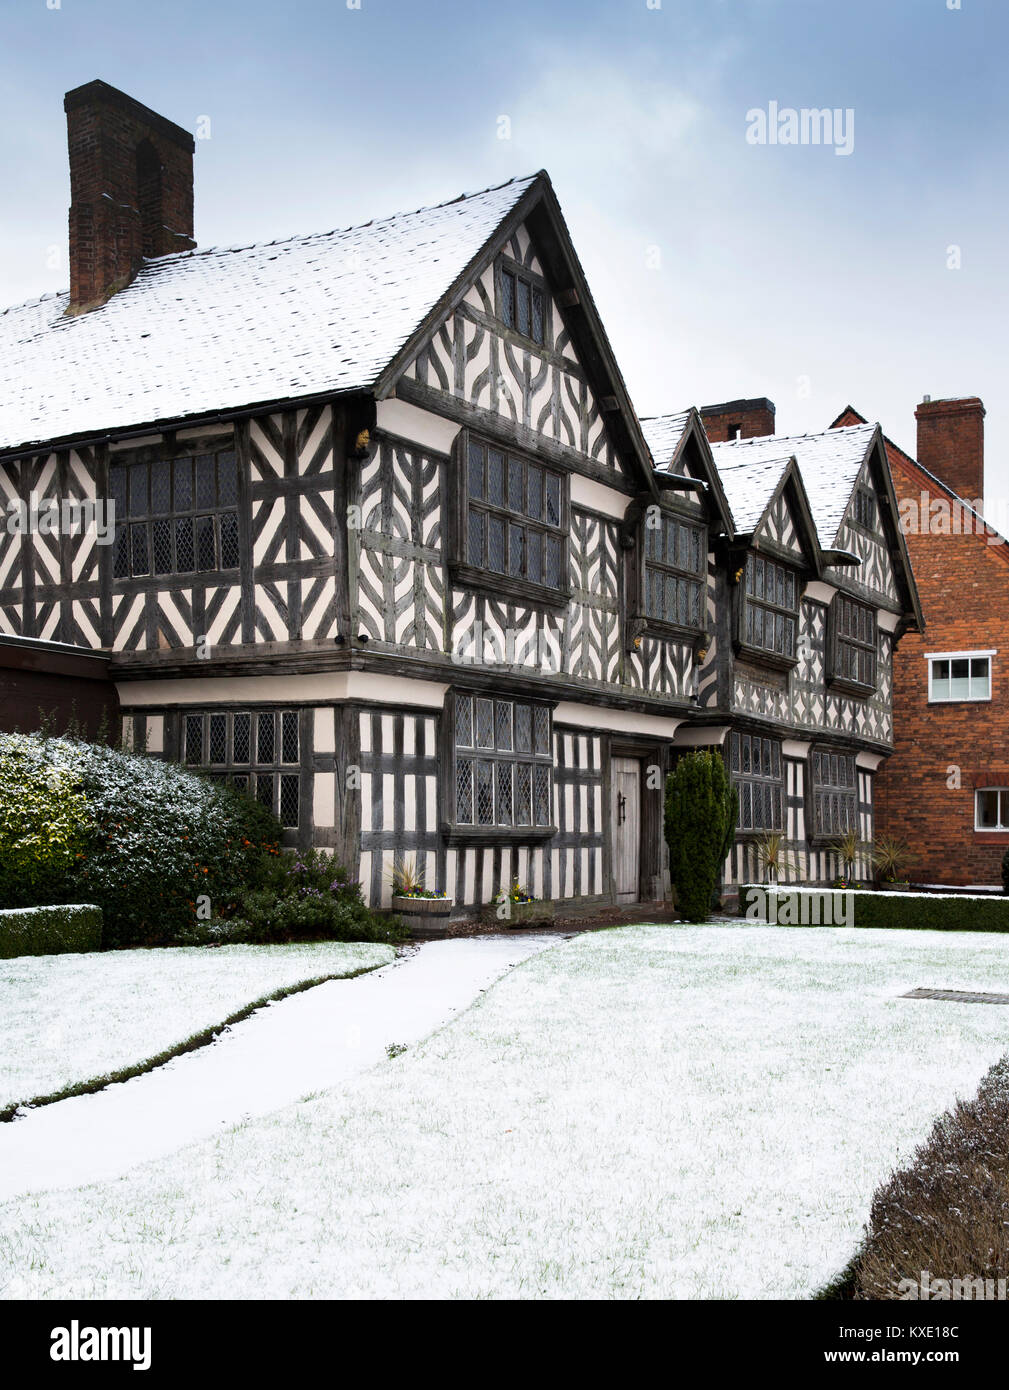 Regno Unito, Inghilterra, Cheshire, Nantwich, London Road, 1577 chiese Mansion, uno degli edifici più antichi del centro lagunare in inverno la neve Foto Stock